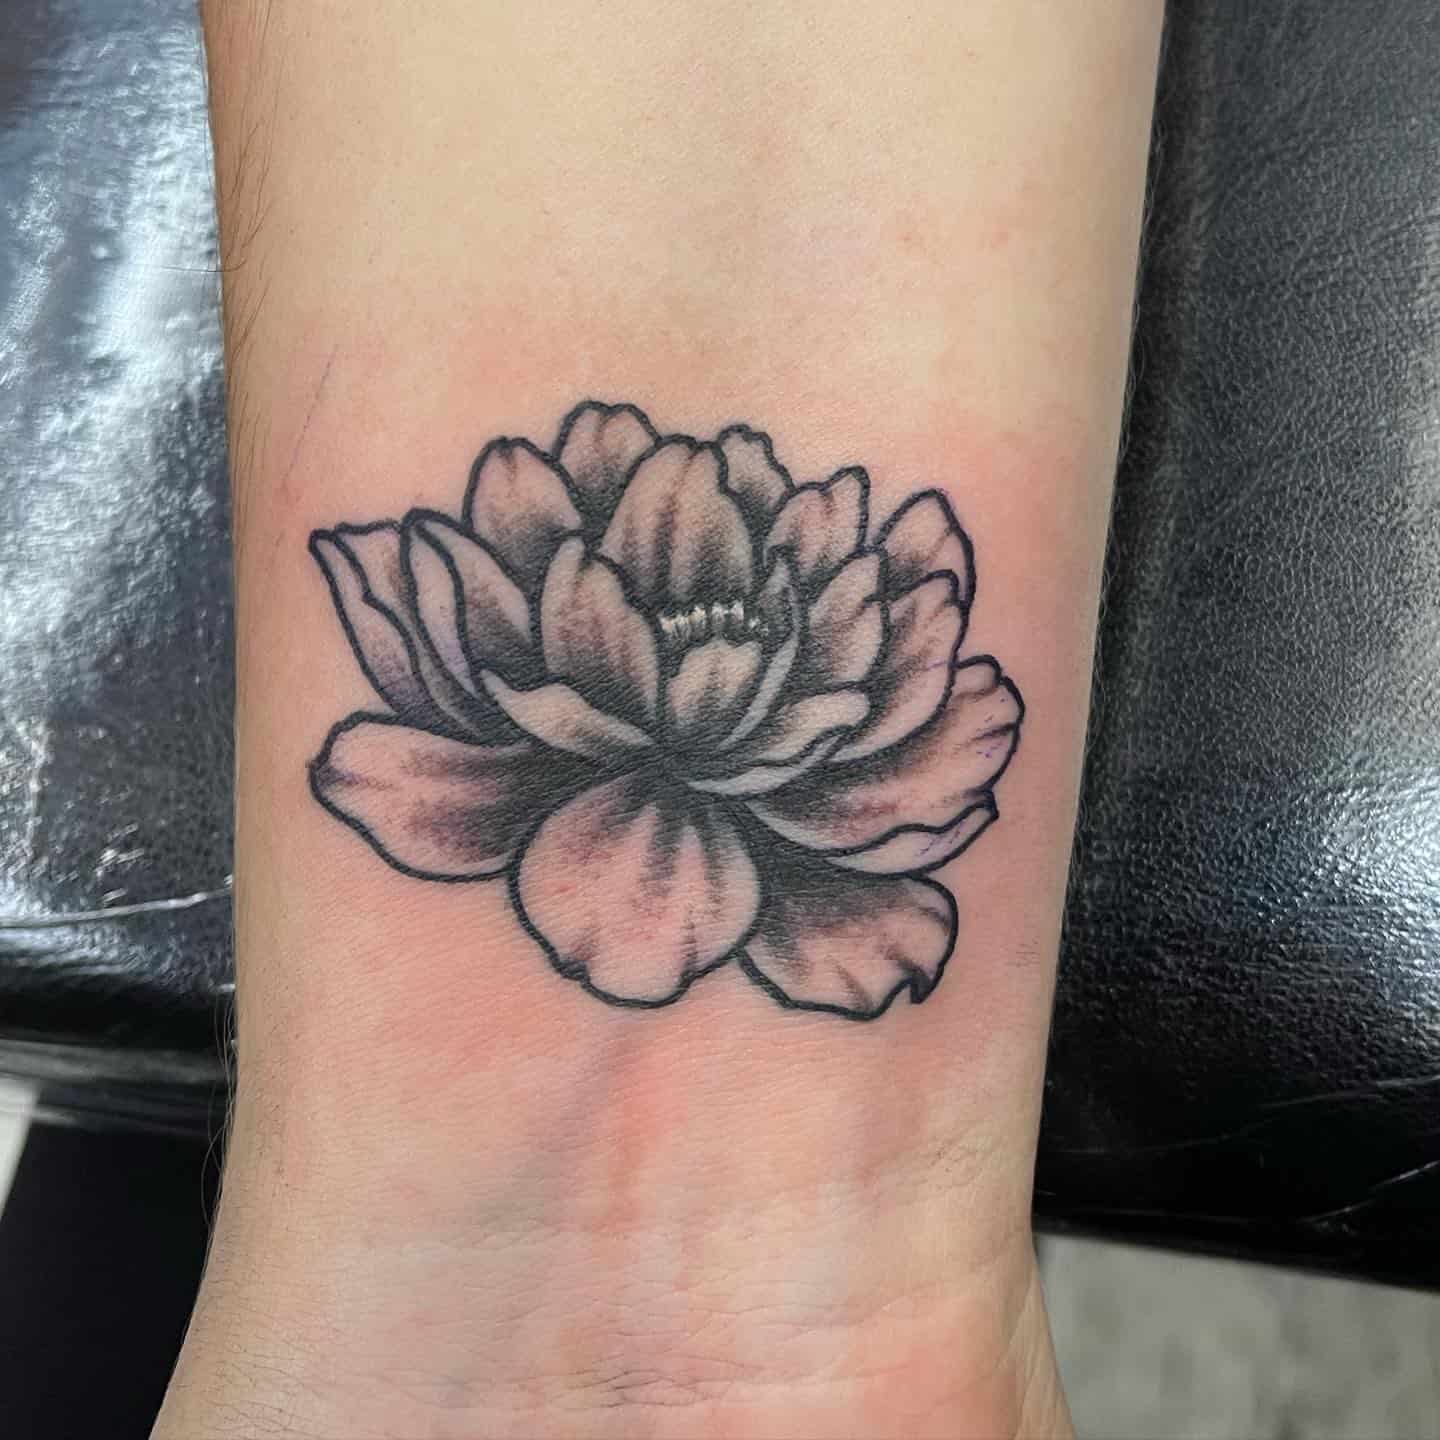 Pequeño tatuaje de flor japonesa 2